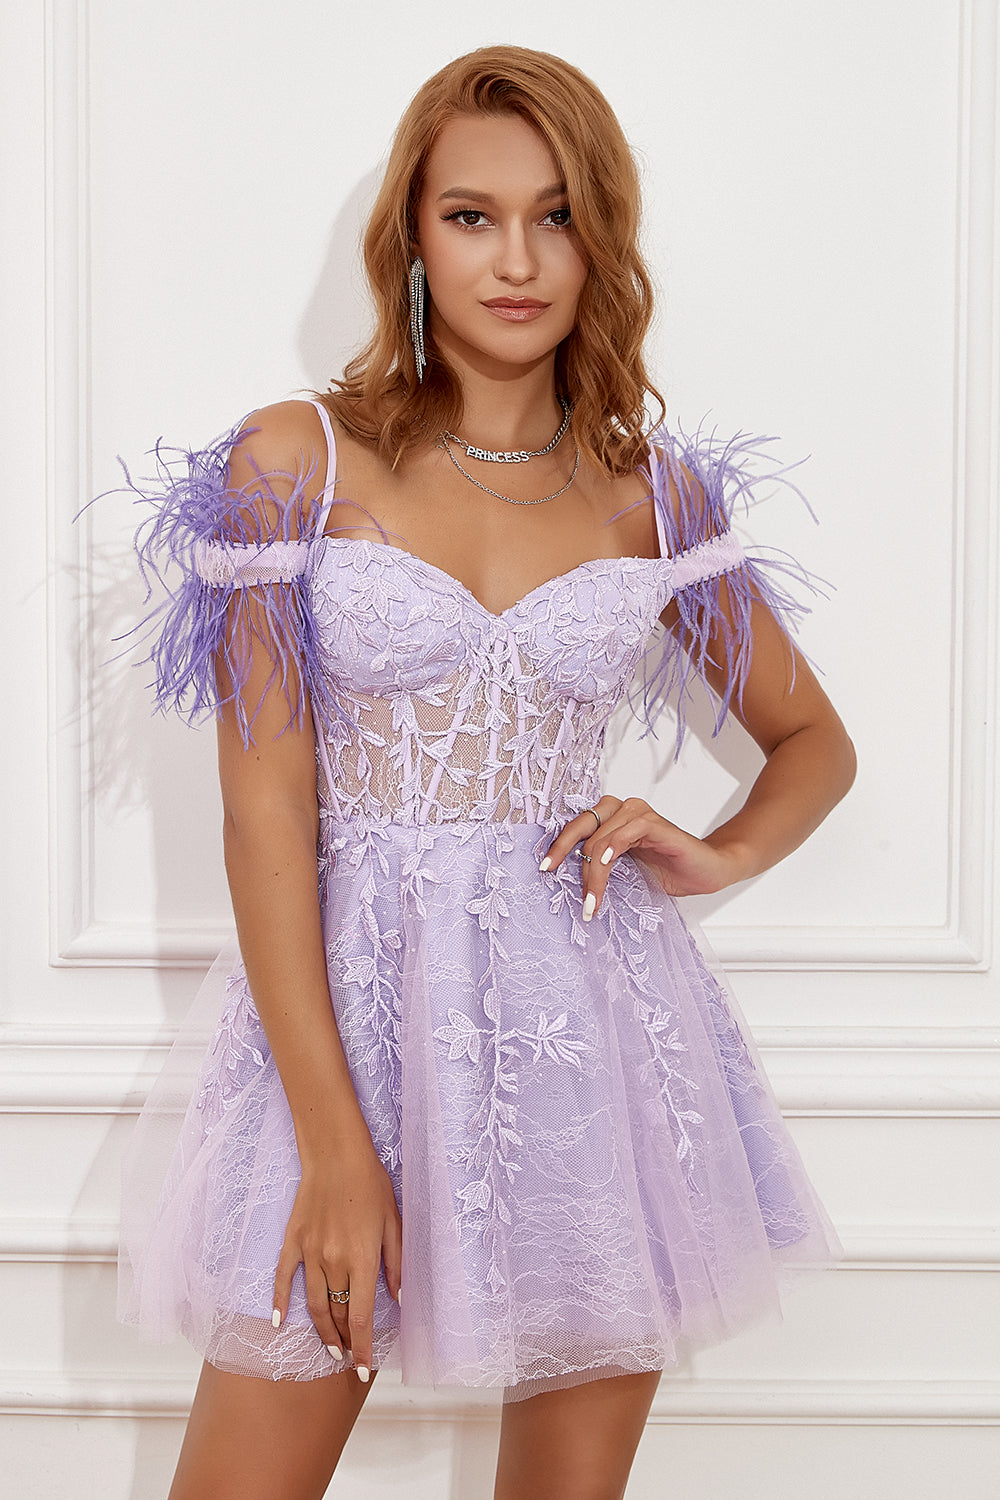 Lavender Off Shoulder Short Formal Dress with Feathers